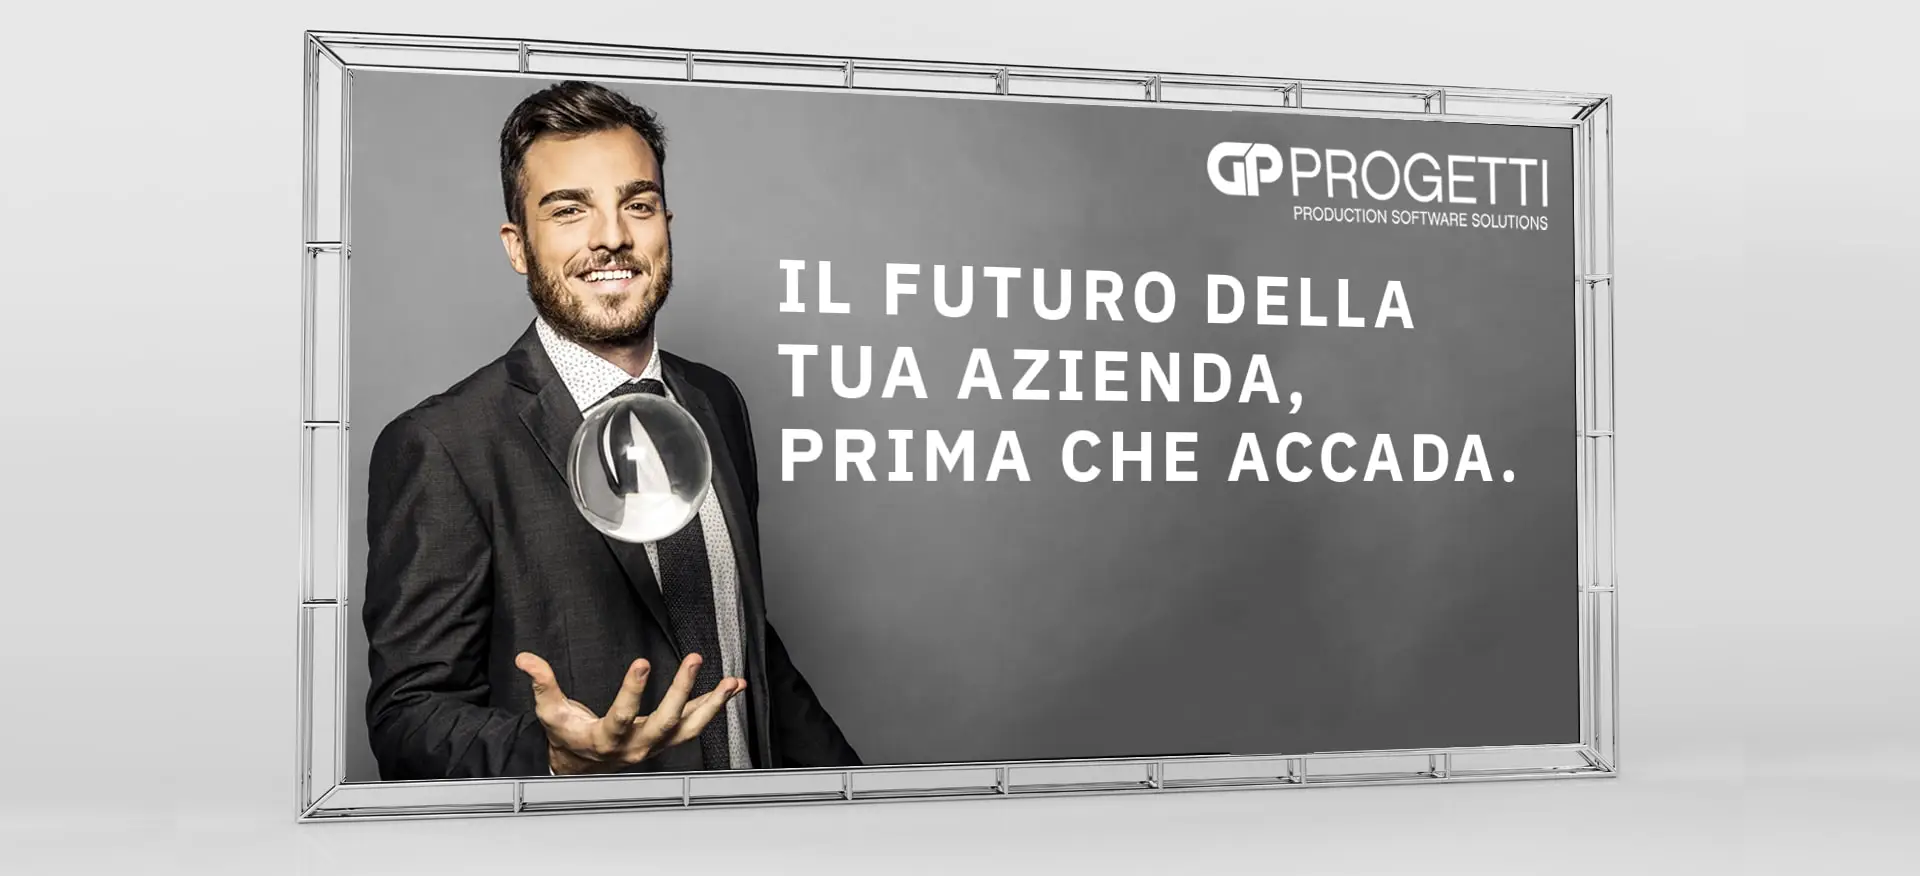 Dexa: realizzazione campagna pubblicitaria per GP Progetti - 4